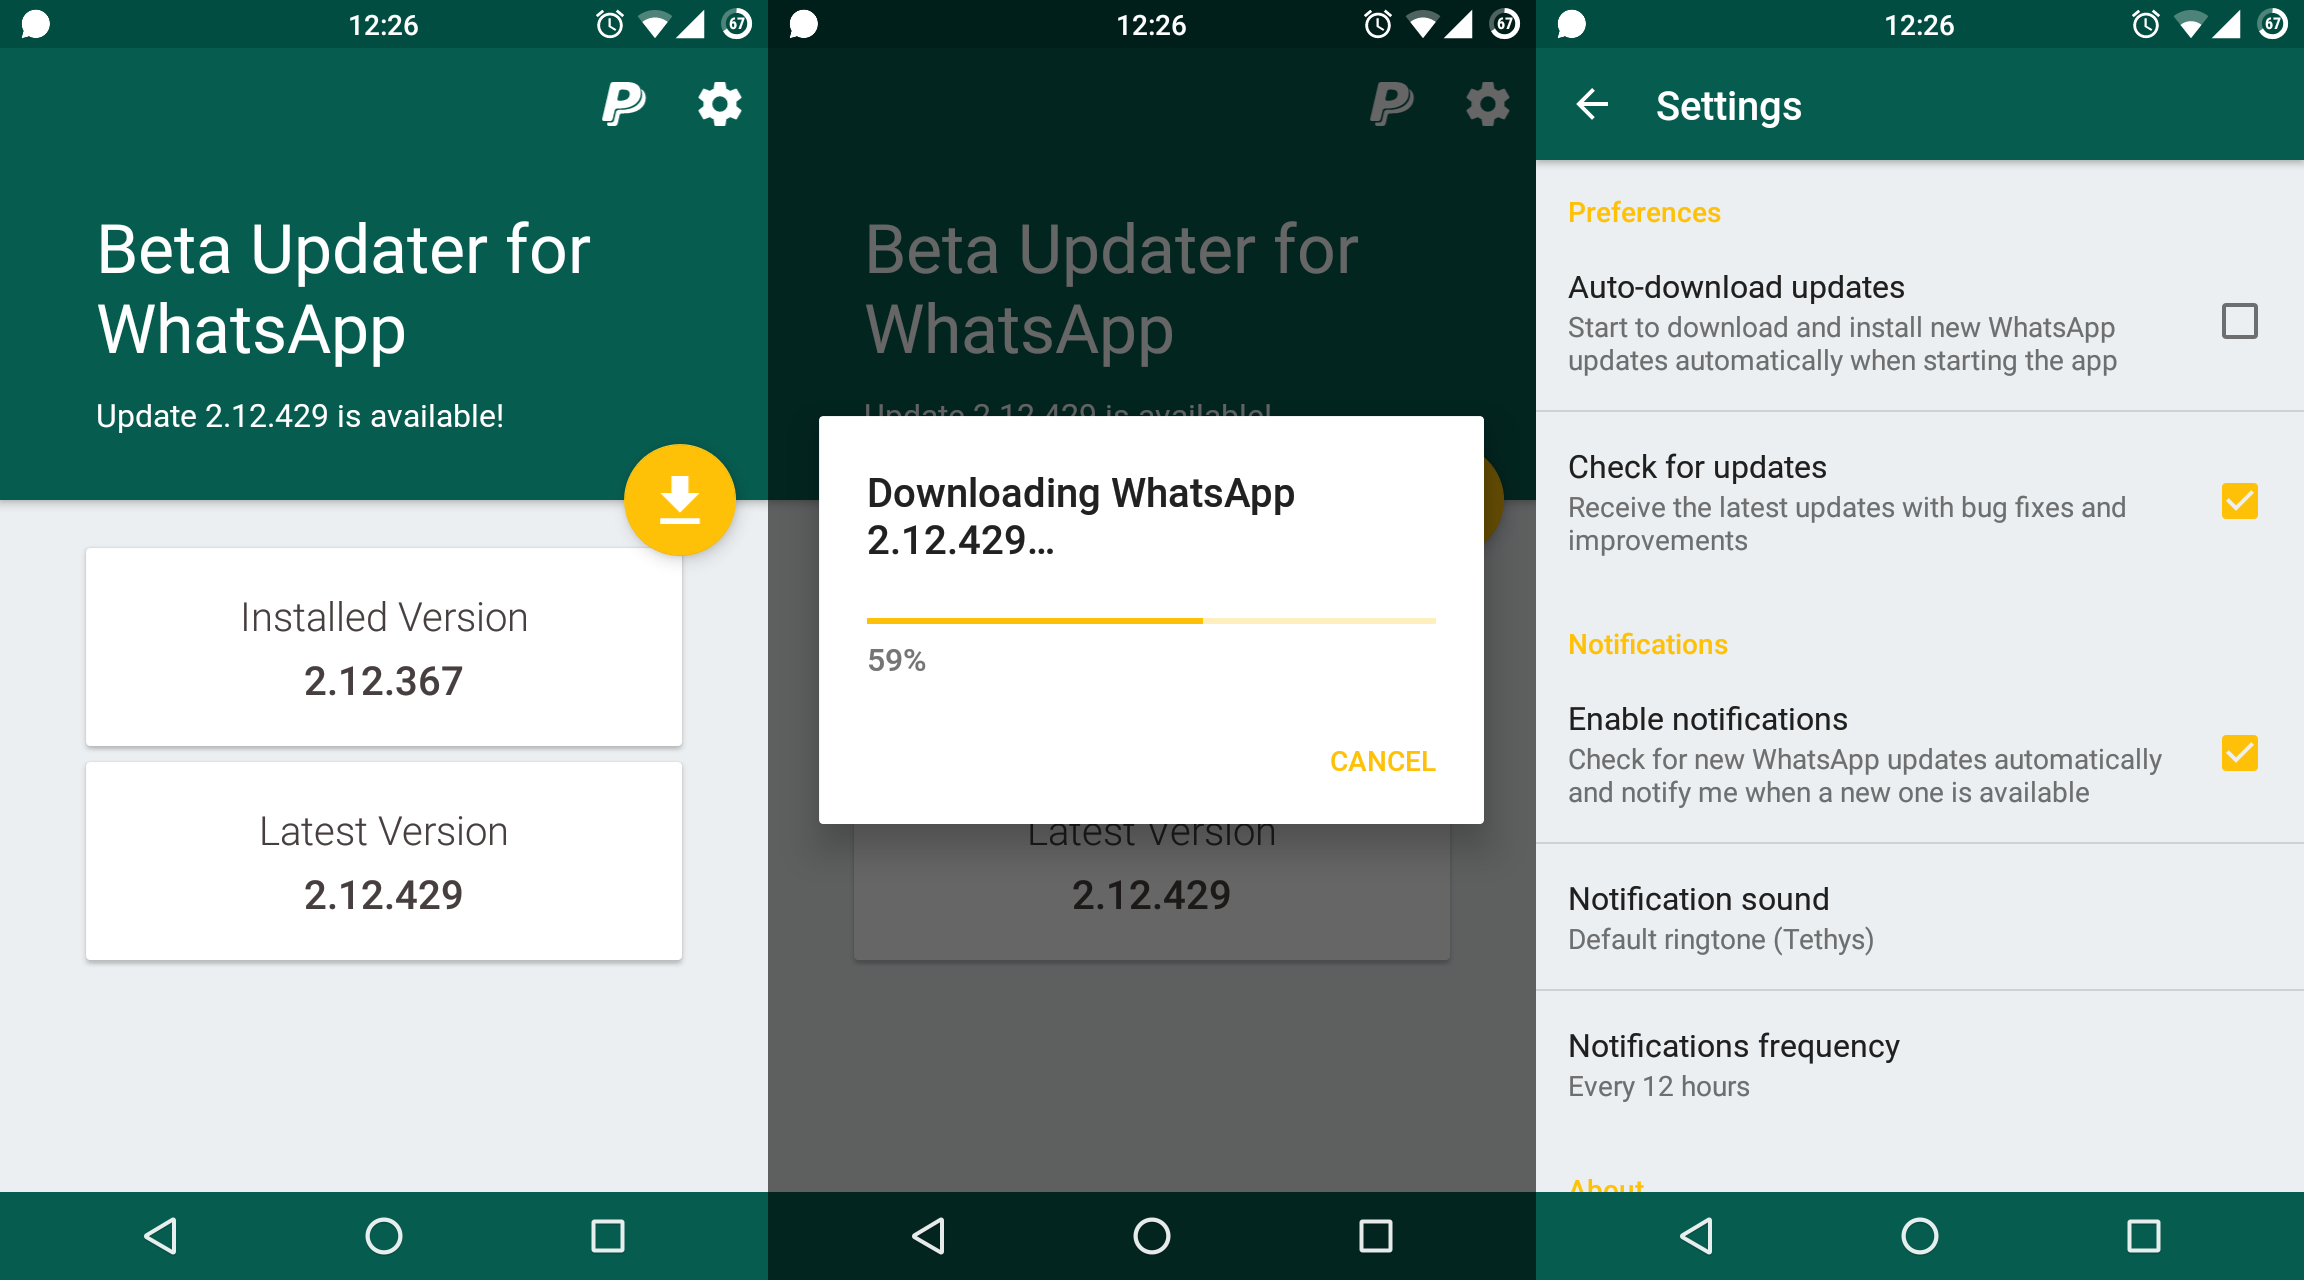 Beta Updater for WhatsApp